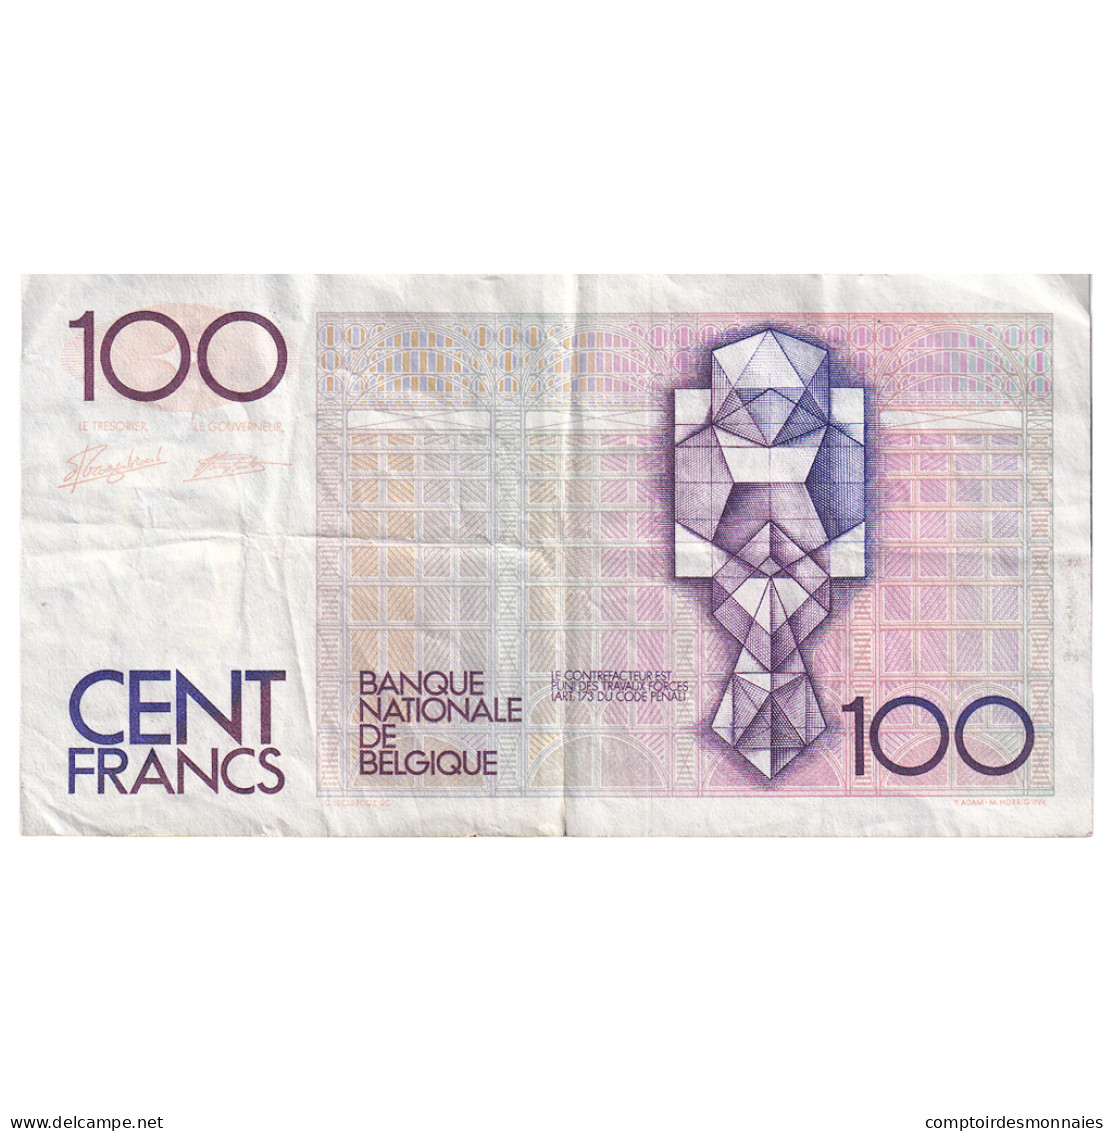 Billet, Belgique, 100 Francs, KM:142a, TTB - 100 Franchi